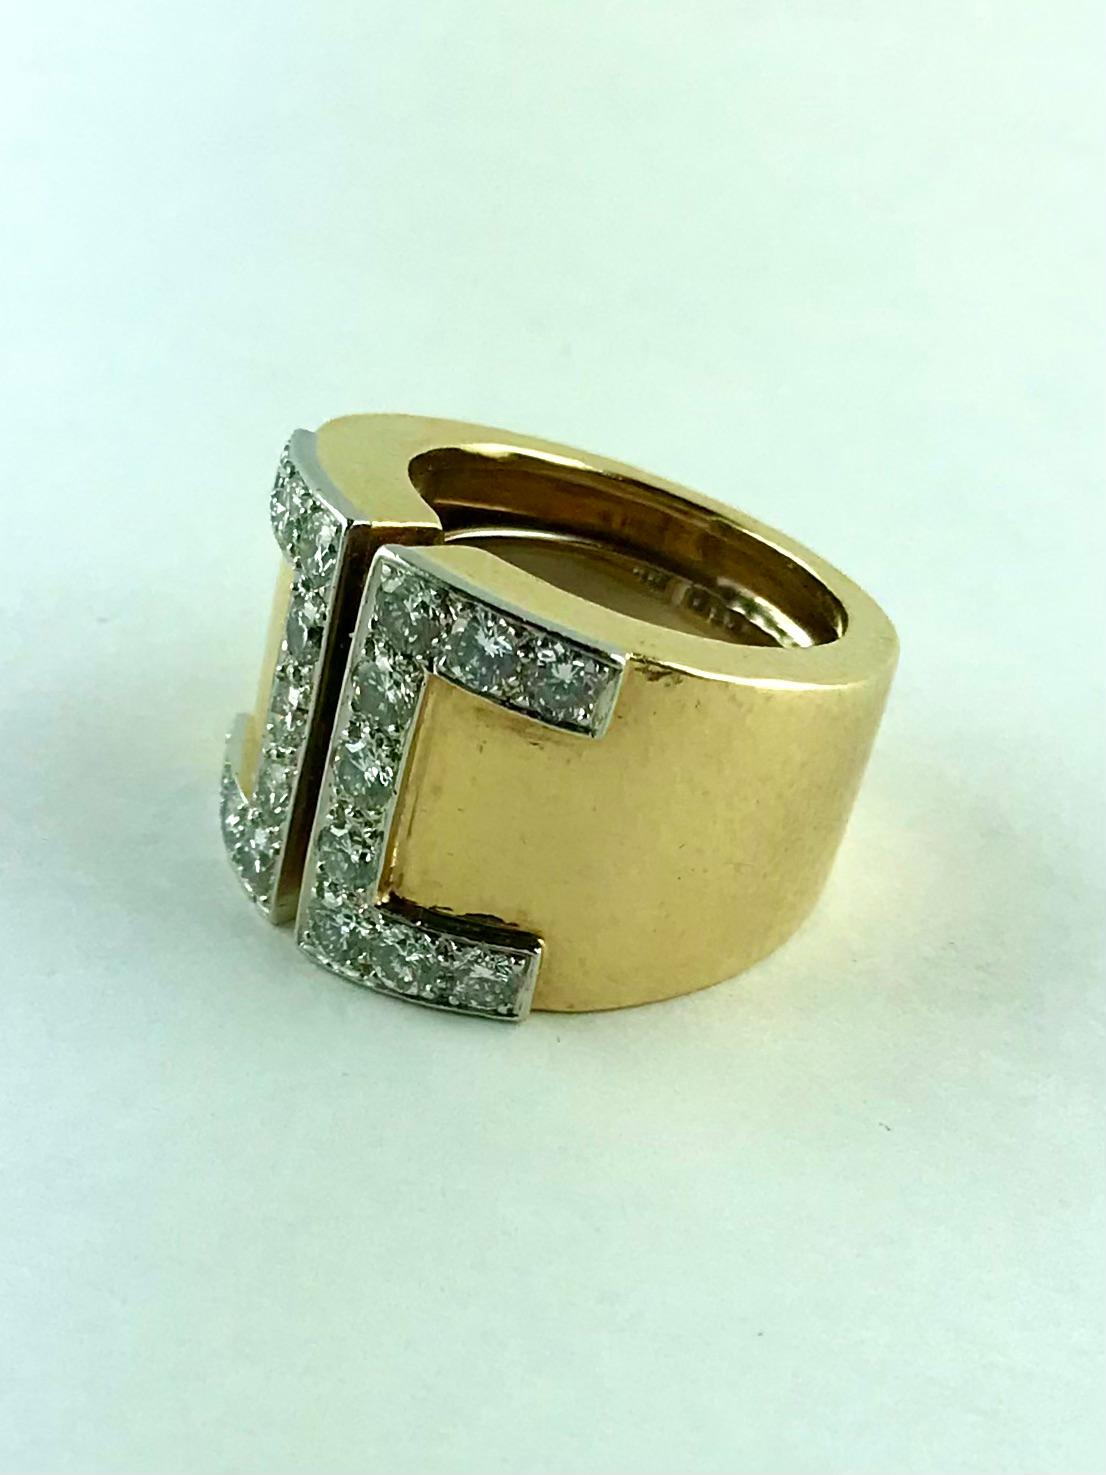 Très élégante bague géométrique David Webb des années 1970, finement travaillée en or jaune 18 carats et en or blanc.  Diamants de taille brillant sertis dans du platine.
Cette élégante et toujours moderne bague à anneau ouvert est en or jaune